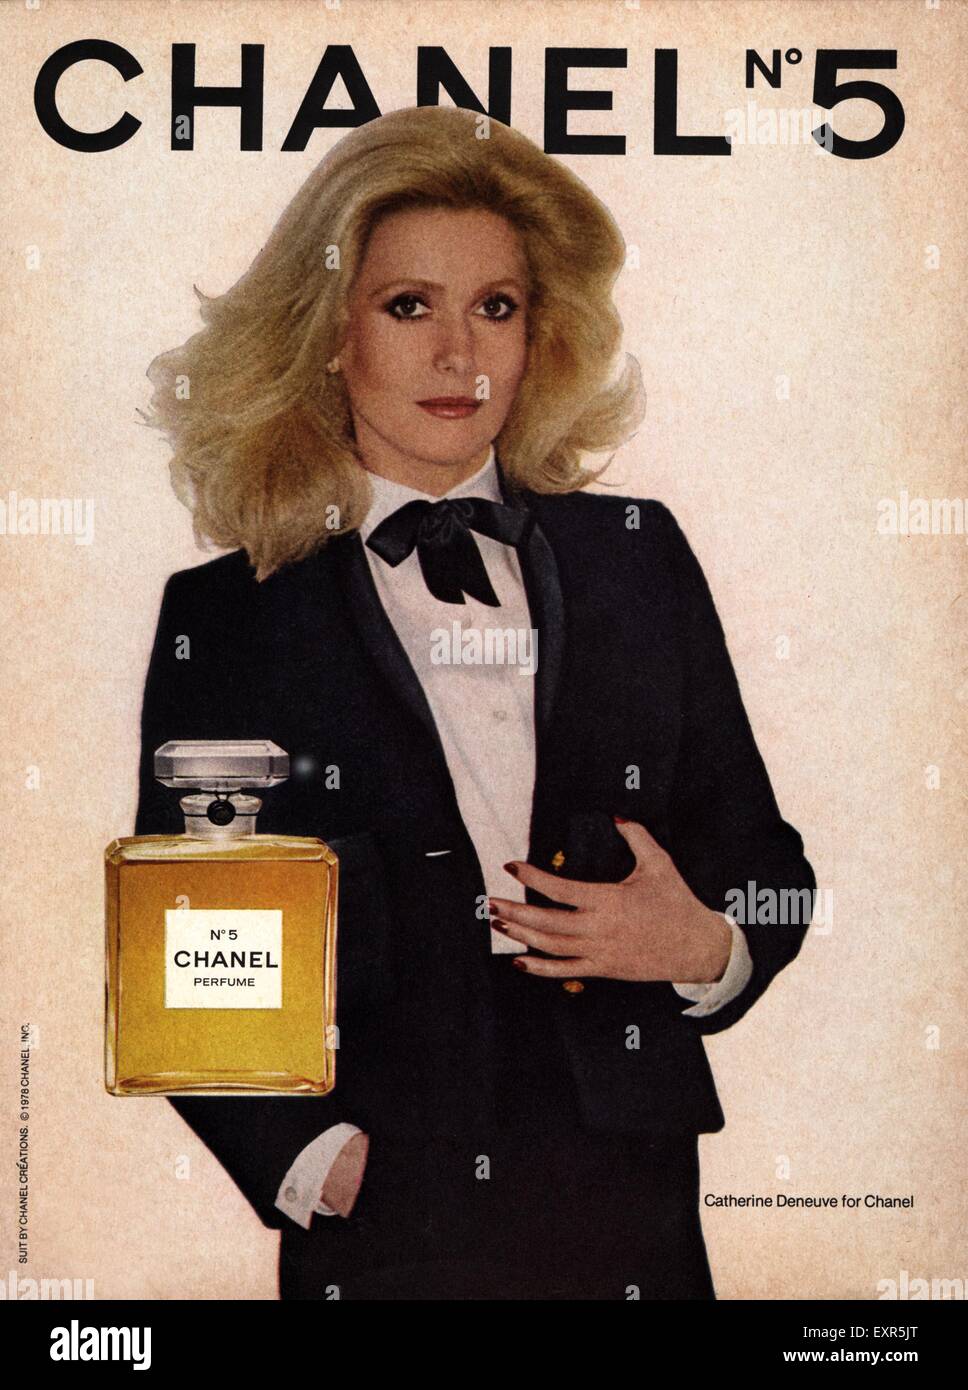 UK Chanel Advert Photo - Alamy